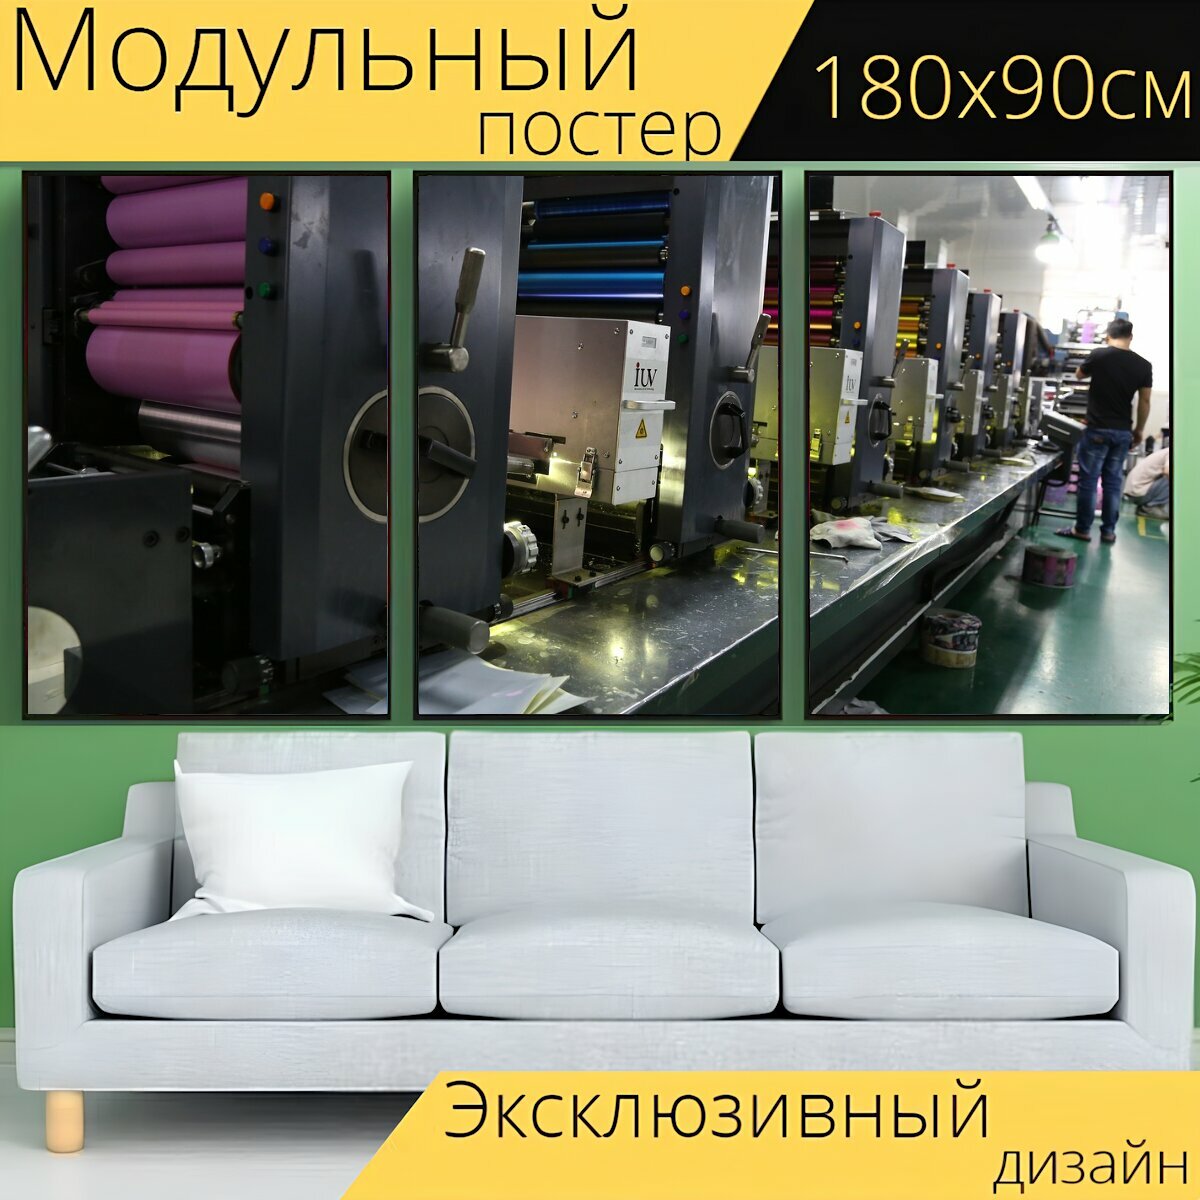 Модульный постер "Офсетная печать, обслуживание печатания, фабрика" 180 x 90 см. для интерьера